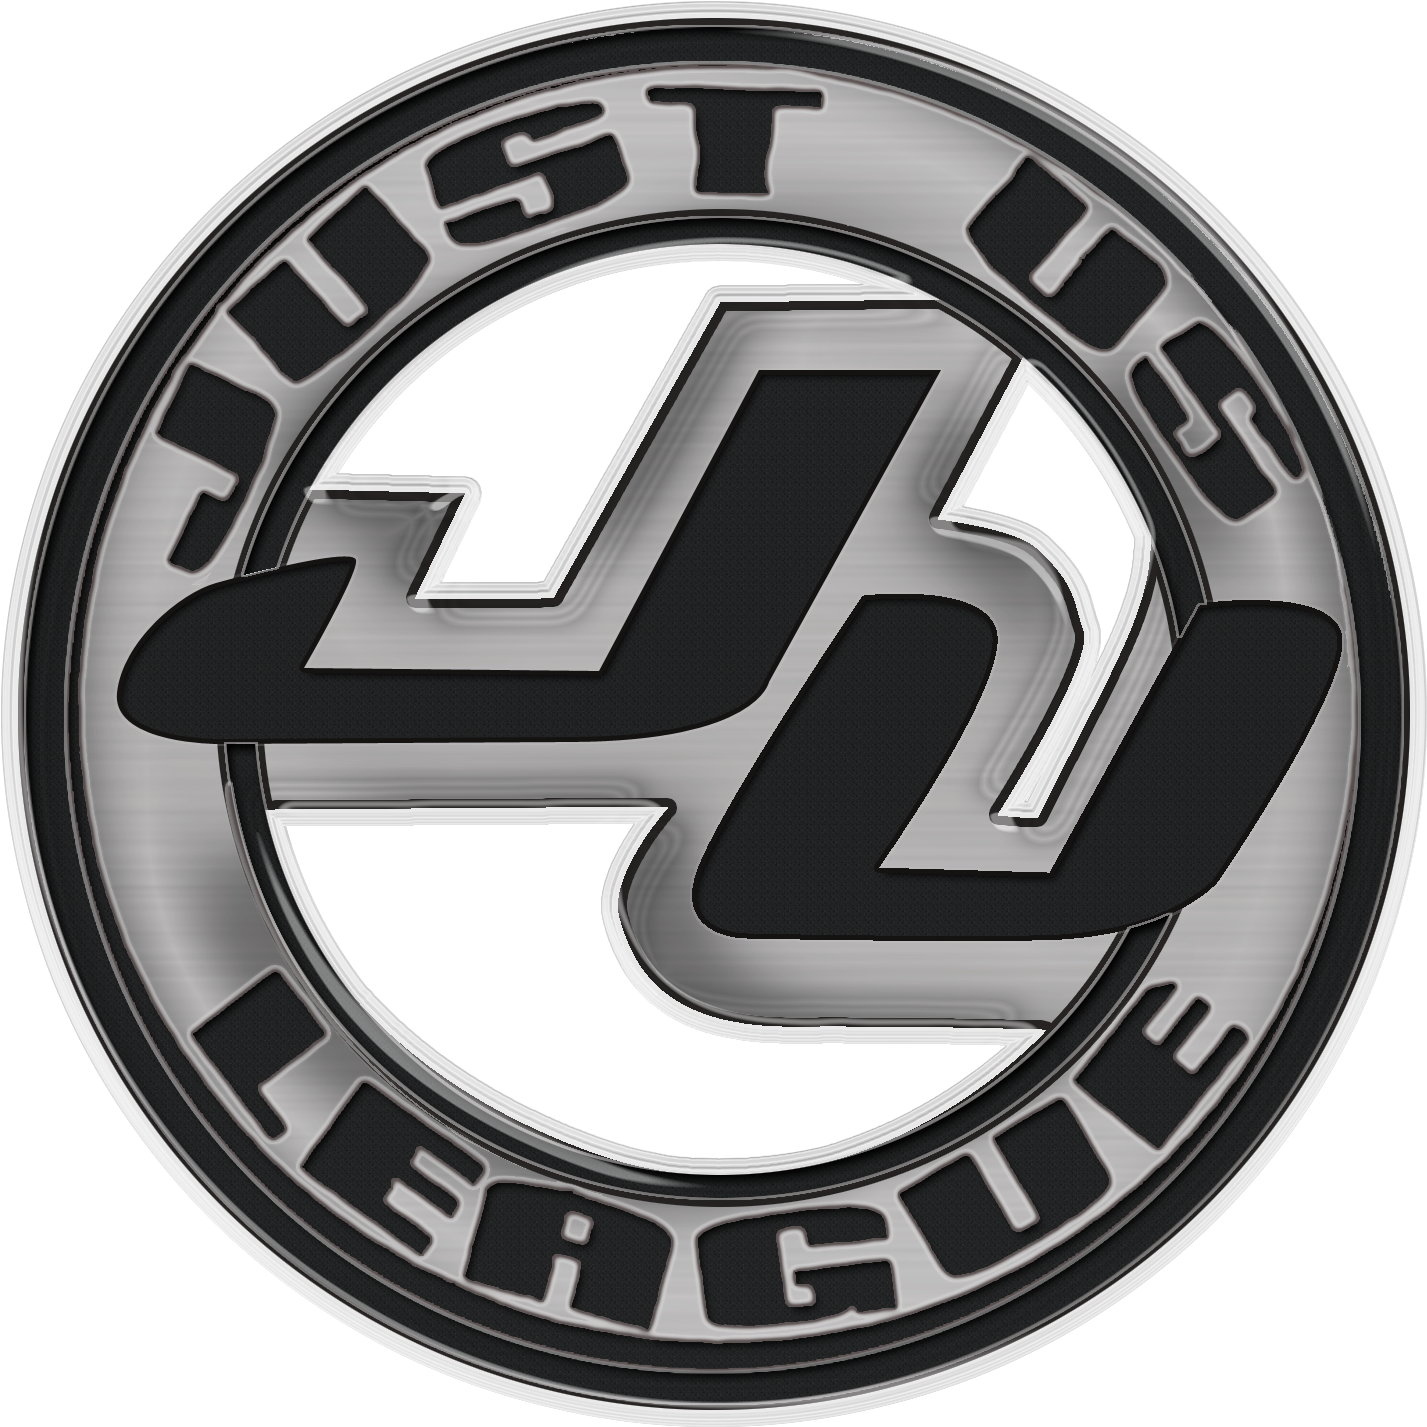 League - Justice League Hd Logo (1432x1461), Png Download